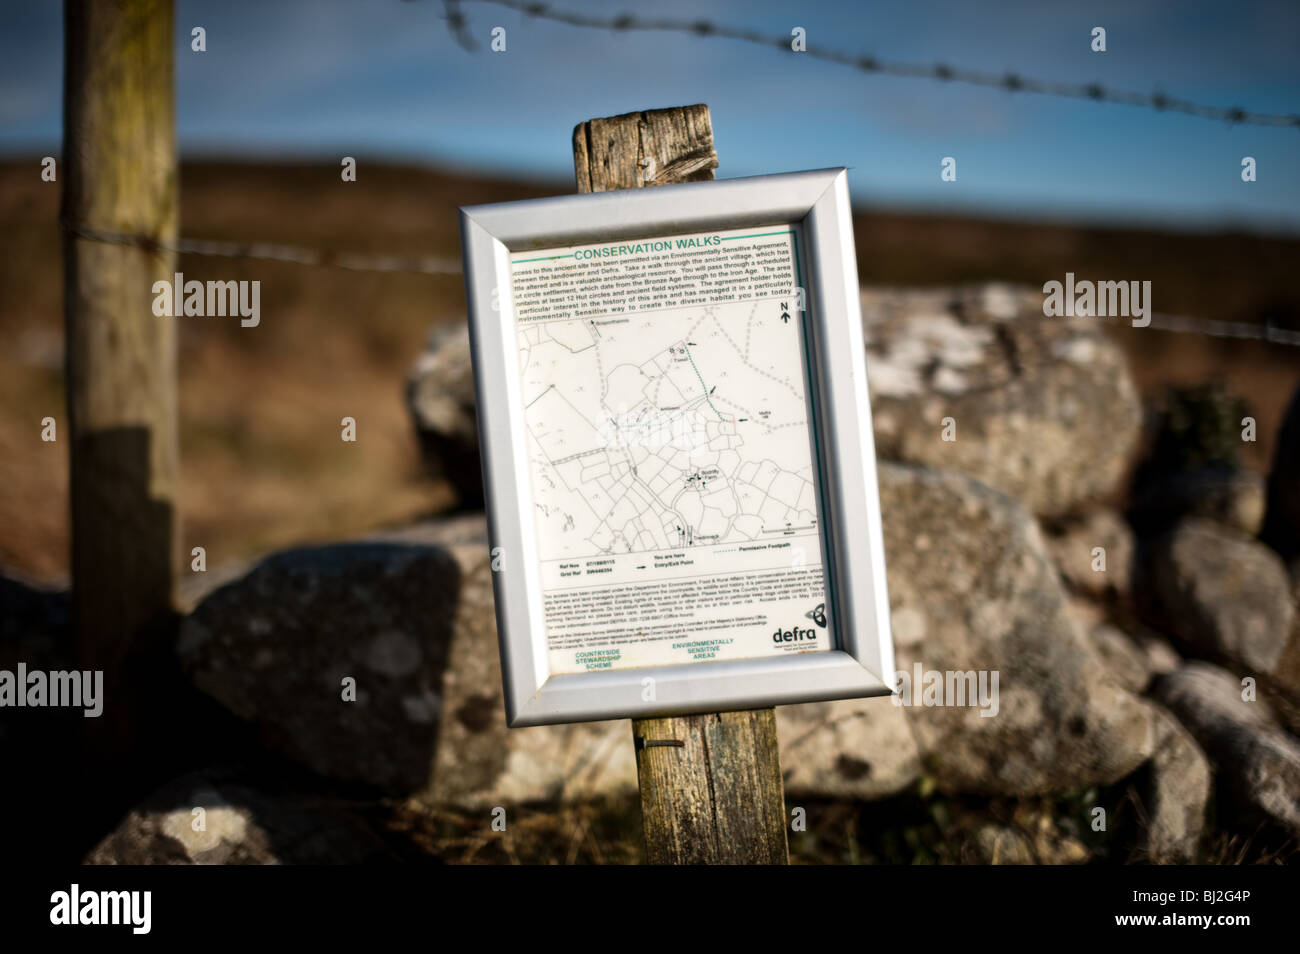 Defra sign in il Cornish campagna fornendo informazioni sulle passeggiate di conservazione Foto Stock